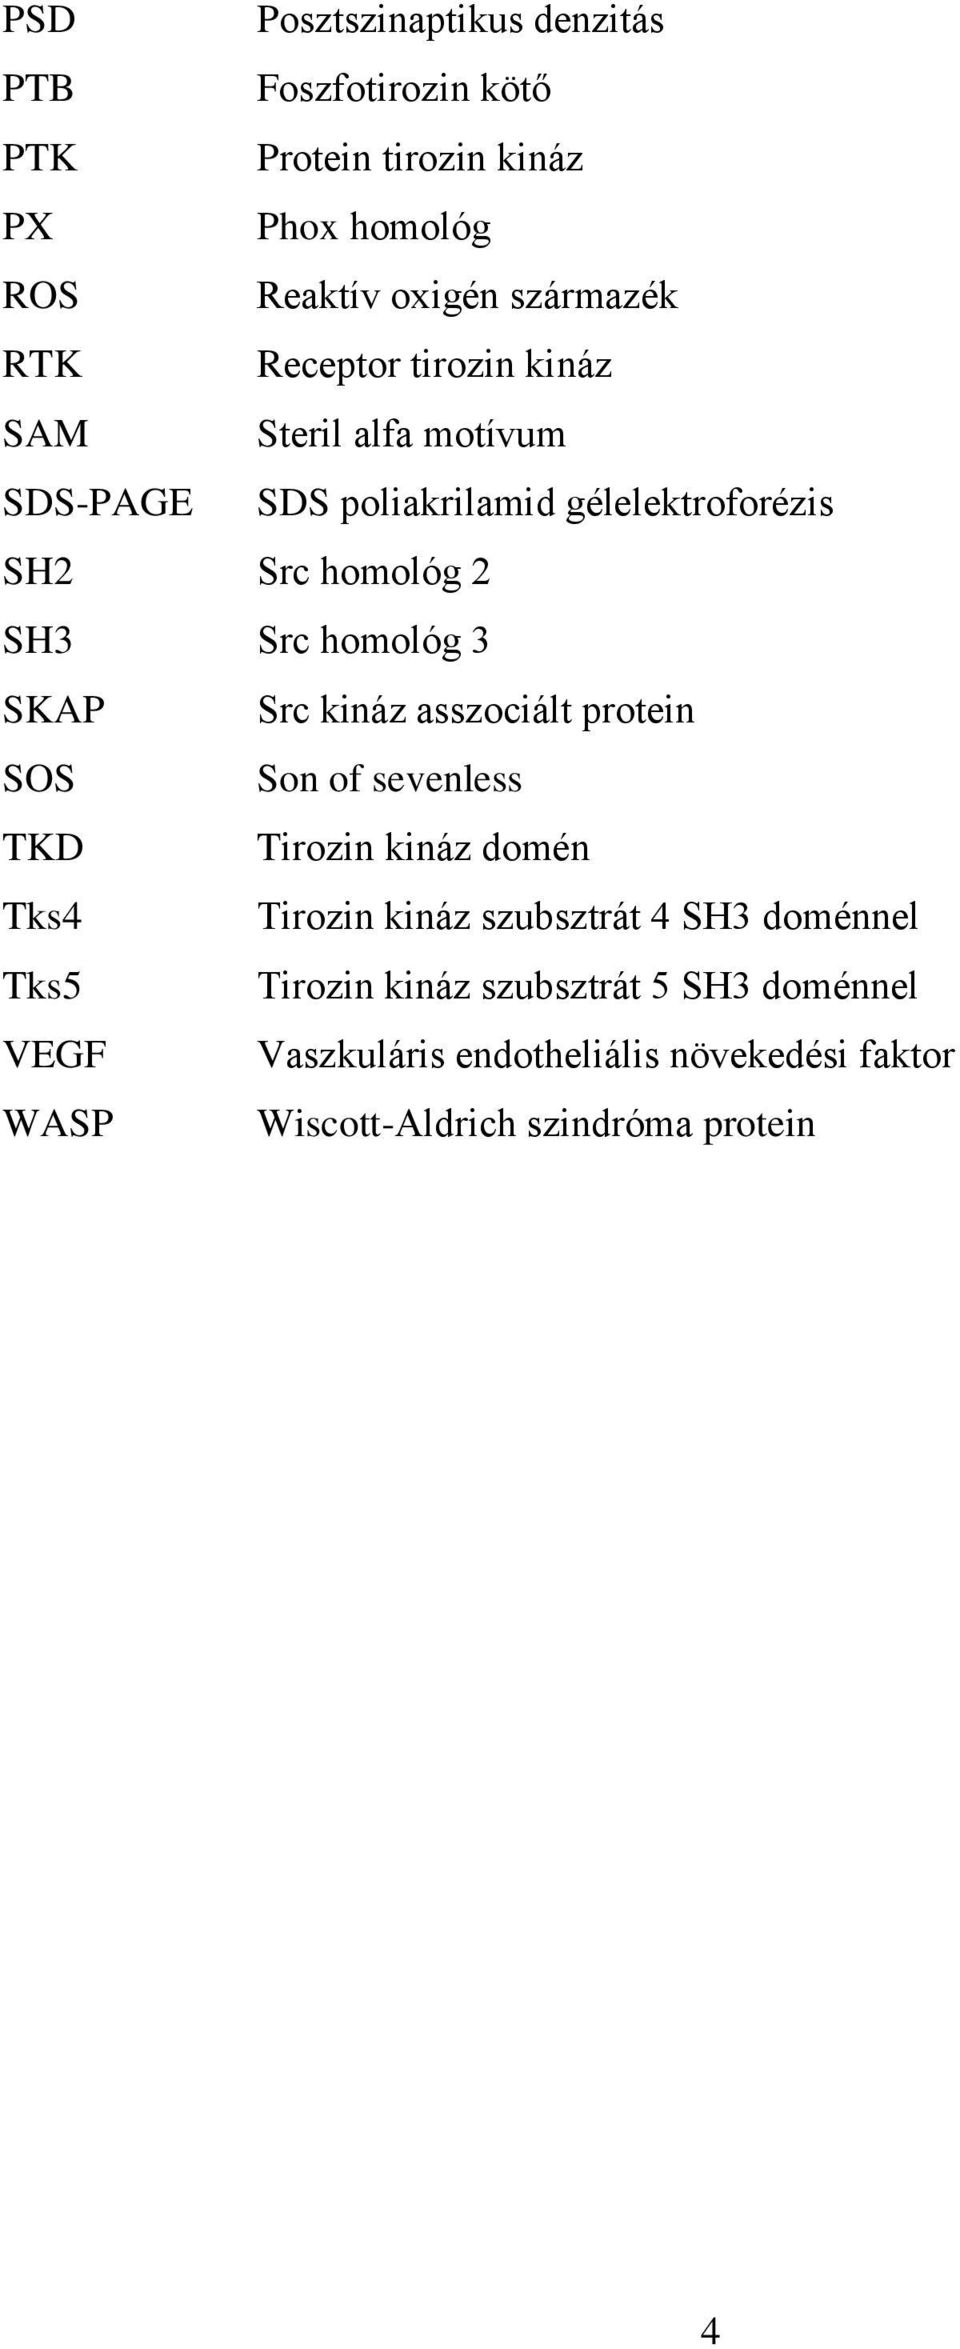 SKAP Src kináz asszociált protein SOS Son of sevenless TKD Tirozin kináz domén Tks4 Tirozin kináz szubsztrát 4 SH3 doménnel Tks5